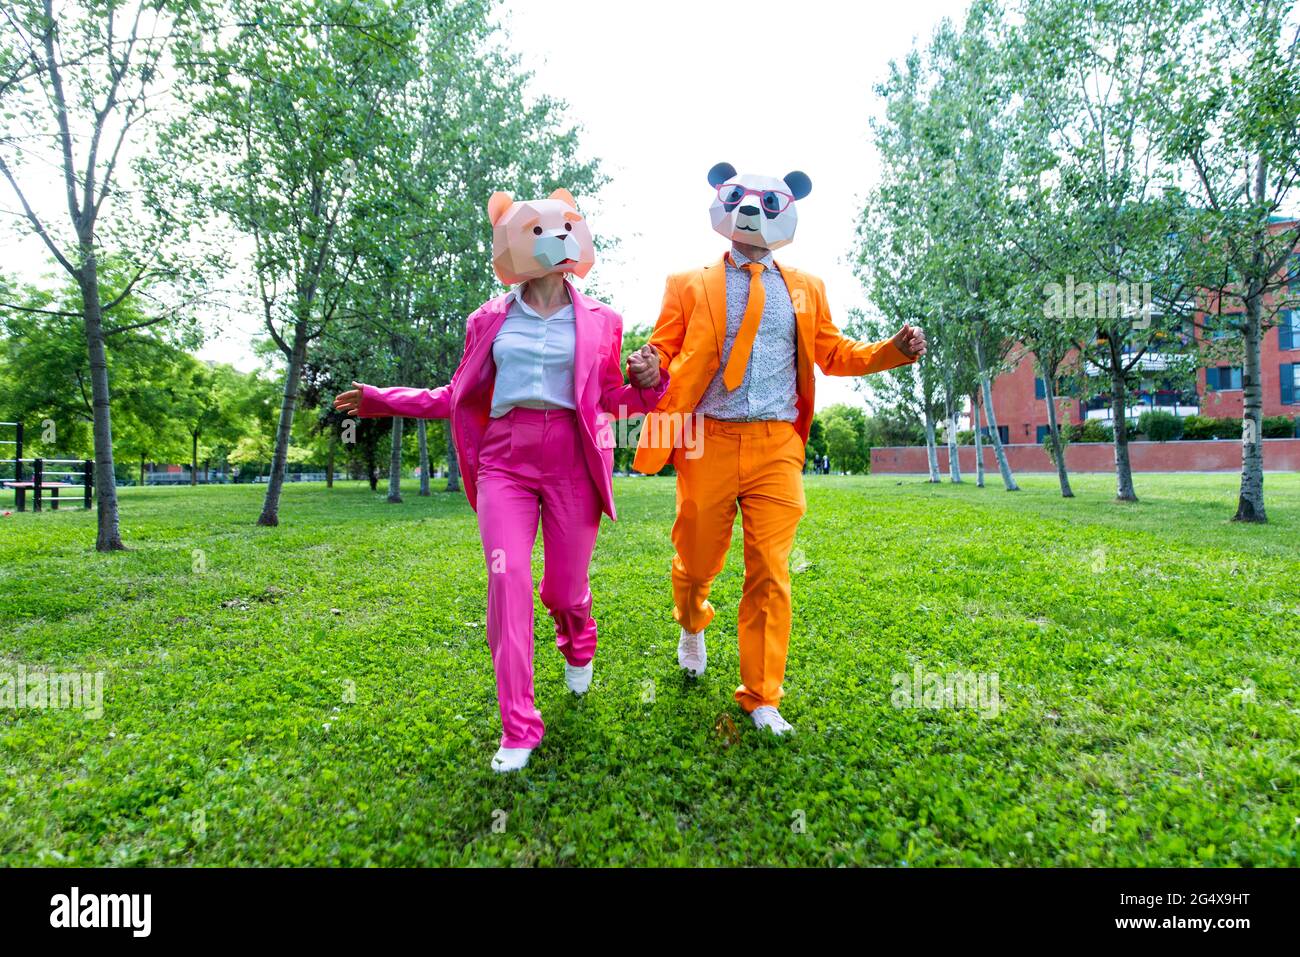 coupleÂ adulto indossa abiti vivaci e maschere animali che tengono le mani mentre corrono insieme attraverso il parco verde Foto Stock